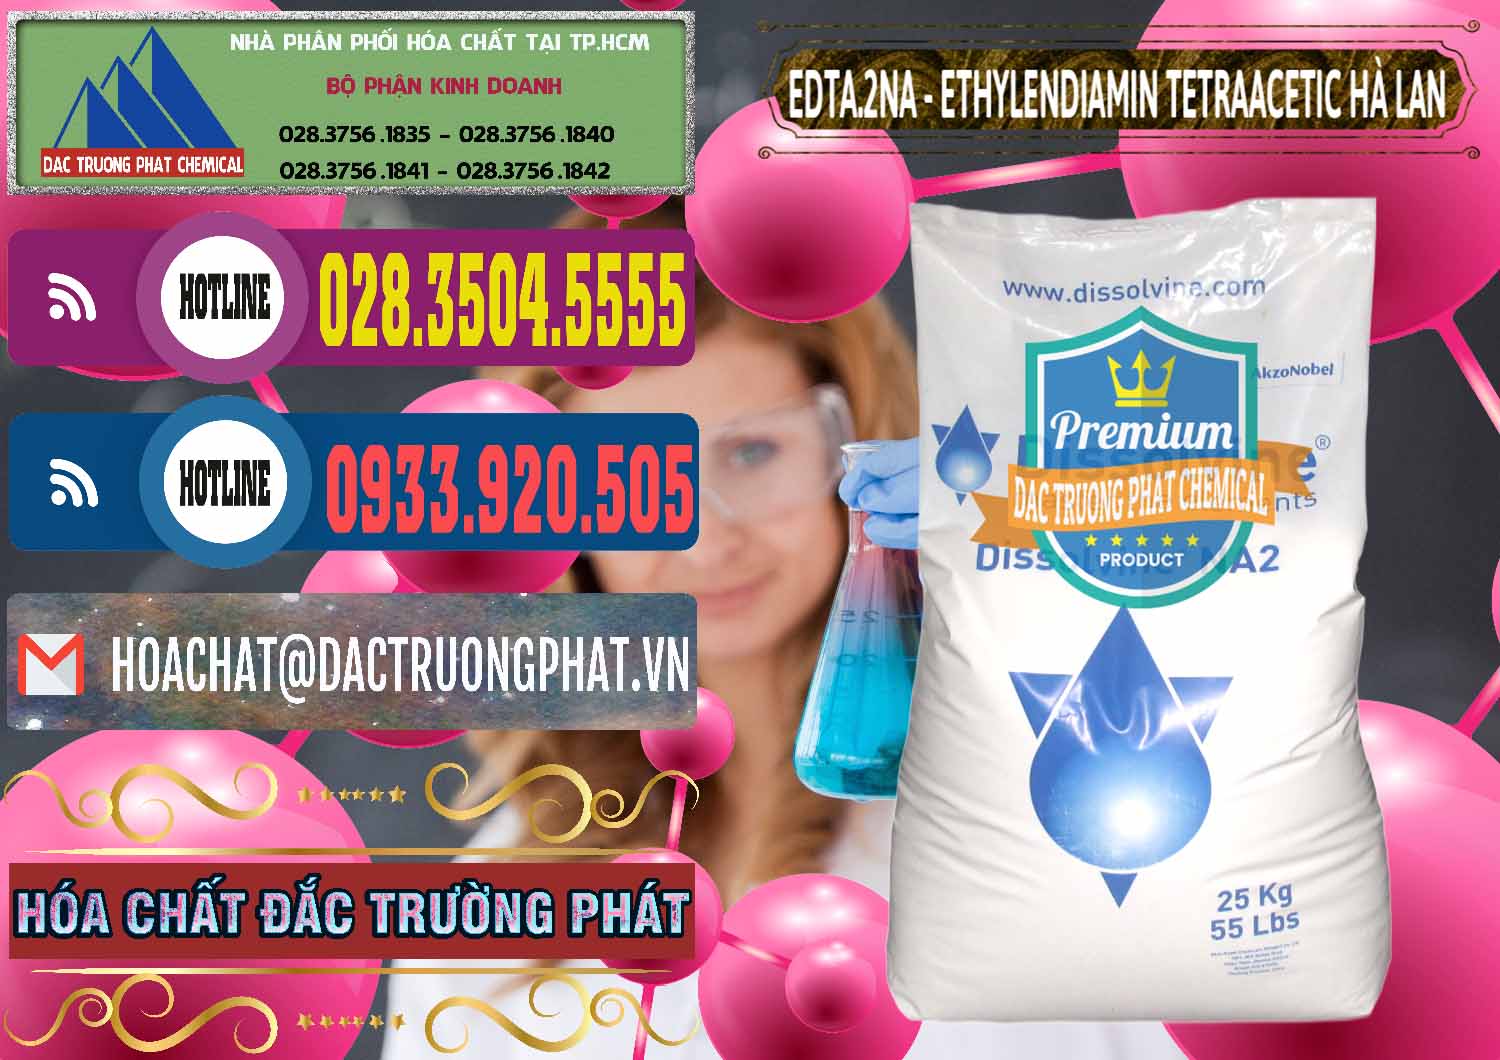 Cty chuyên phân phối ( bán ) EDTA.2NA - Ethylendiamin Tetraacetic Dissolvine Hà Lan Netherlands - 0064 - Nhà nhập khẩu & cung cấp hóa chất tại TP.HCM - muabanhoachat.com.vn